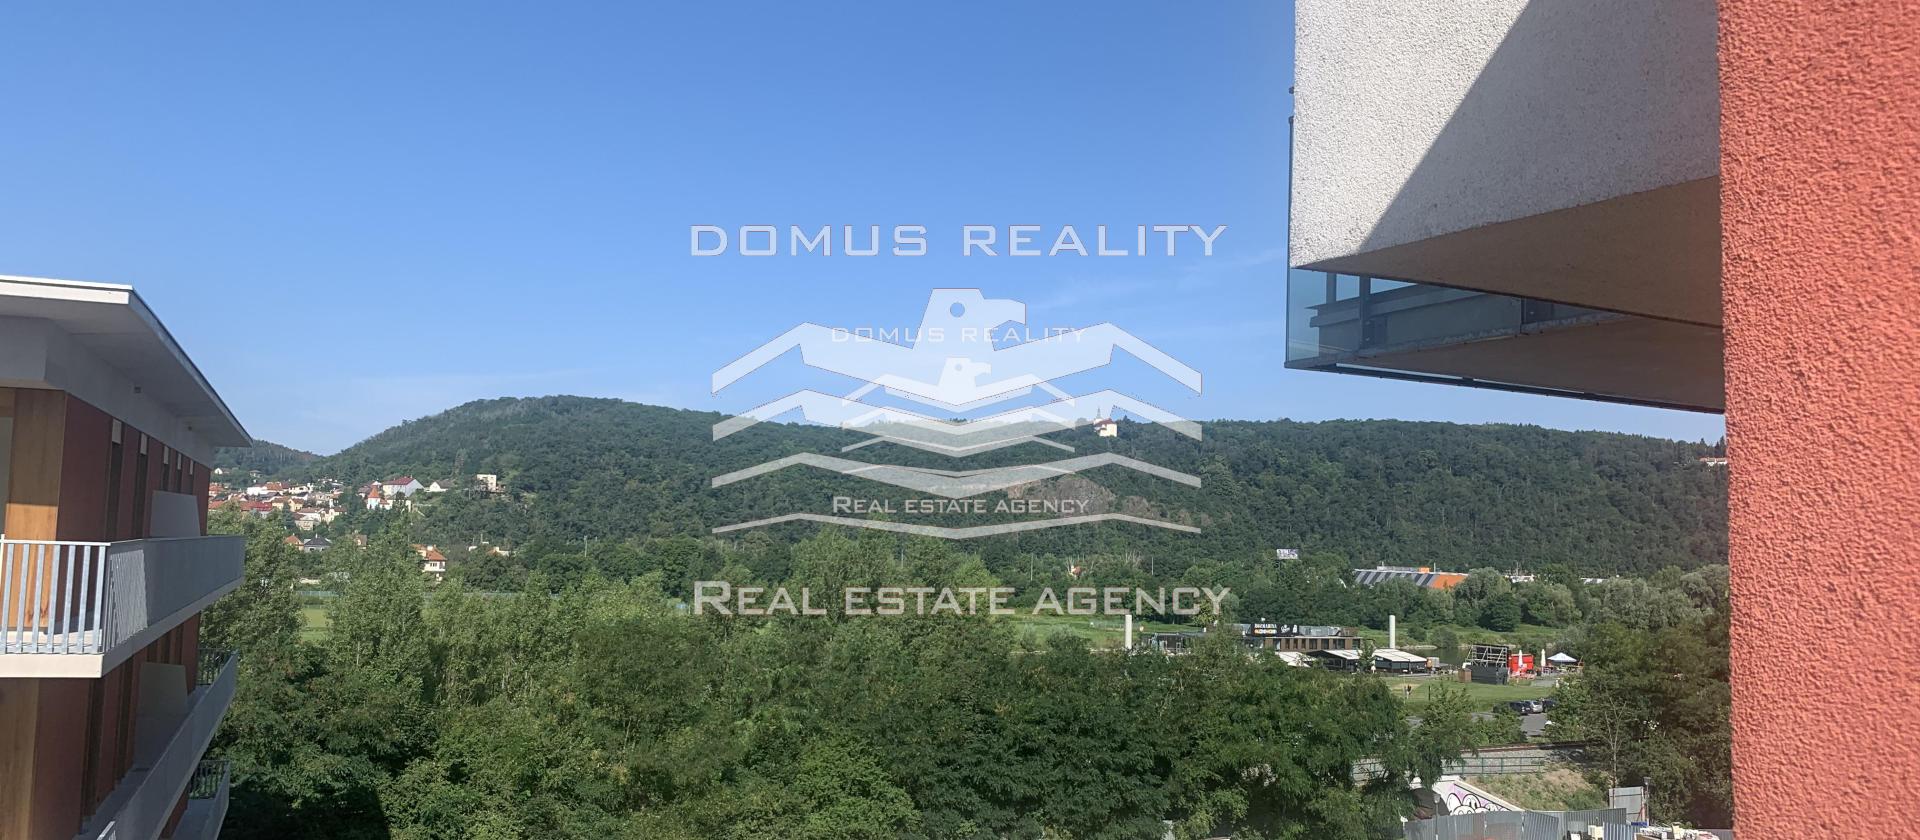 Domus reality nabízí k pronájmu nezařízený byt 2+kk o velikosti 90 m2 s balkonem, garáží a sklepem v ceně. Jedná se o rezidenci v klidné lokalitě Prahy 4